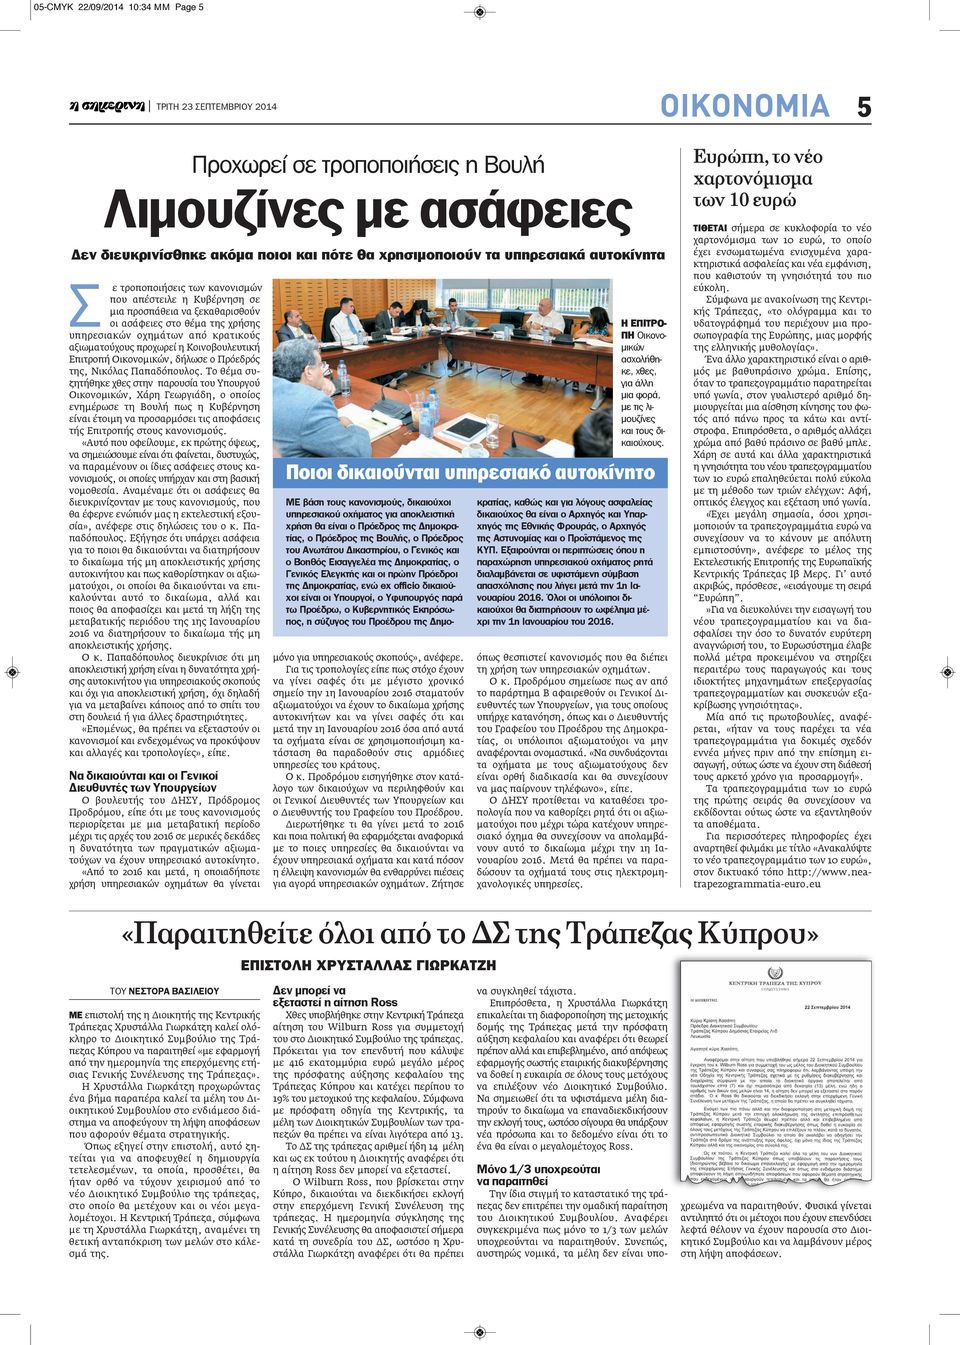 προχωρεί η Κοινοβουλευτική Επιτροπή Οικονομικών, δήλωσε ο Πρόεδρός της, Νικόλας Παπαδόπουλος.